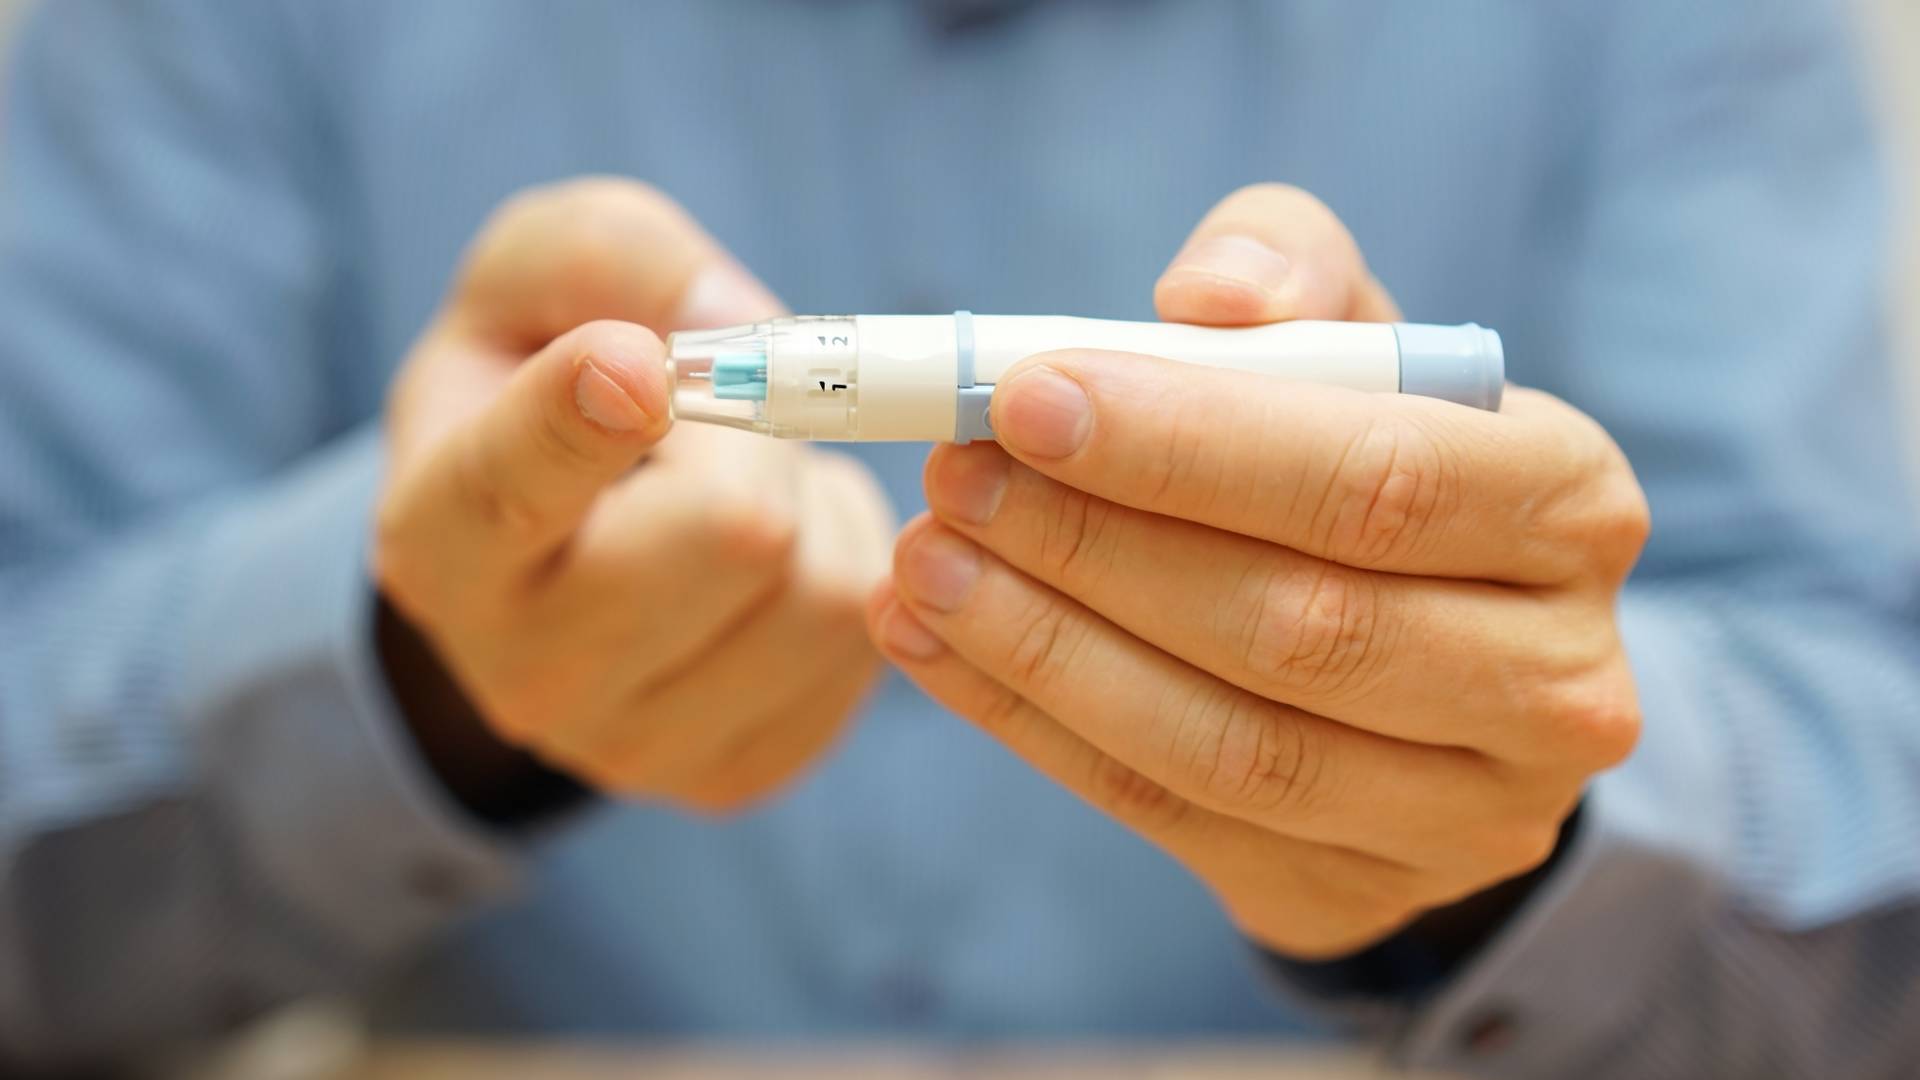 Insulina: jak sprawdzić jej poziom i jakie są normy